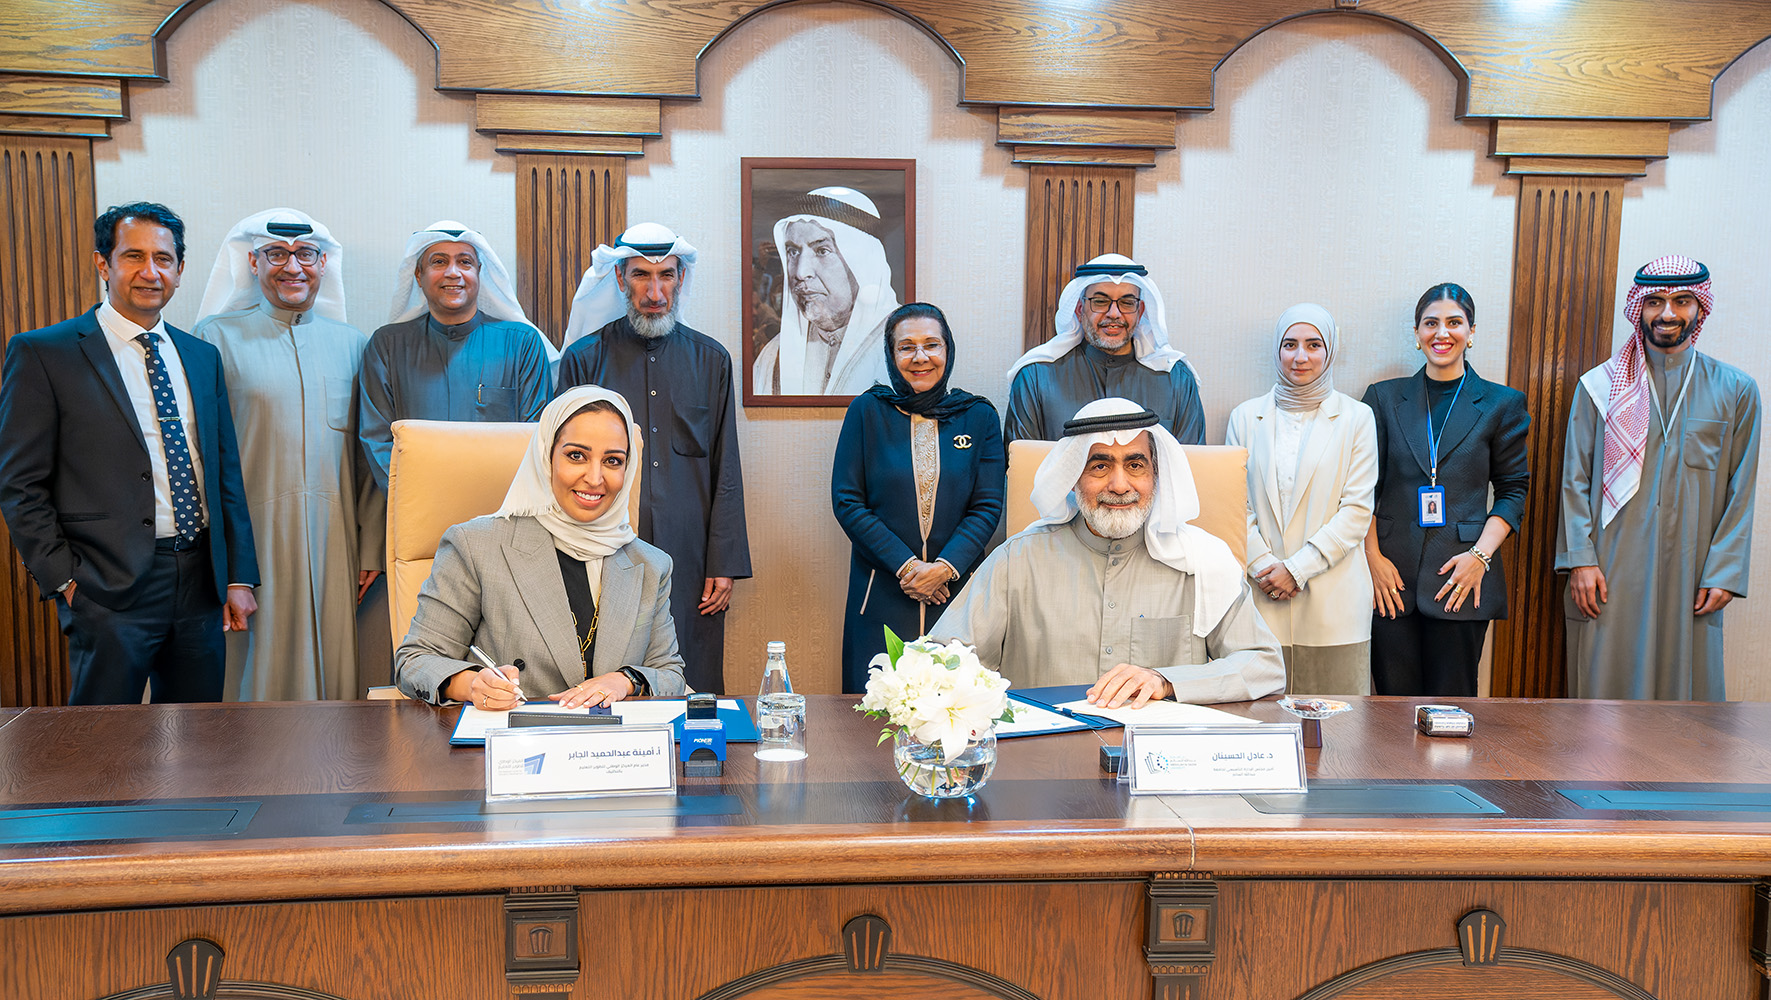 جامعة عبدالله السالم توقع اتفاقية مع المركز الوطني لتطوير التعليم